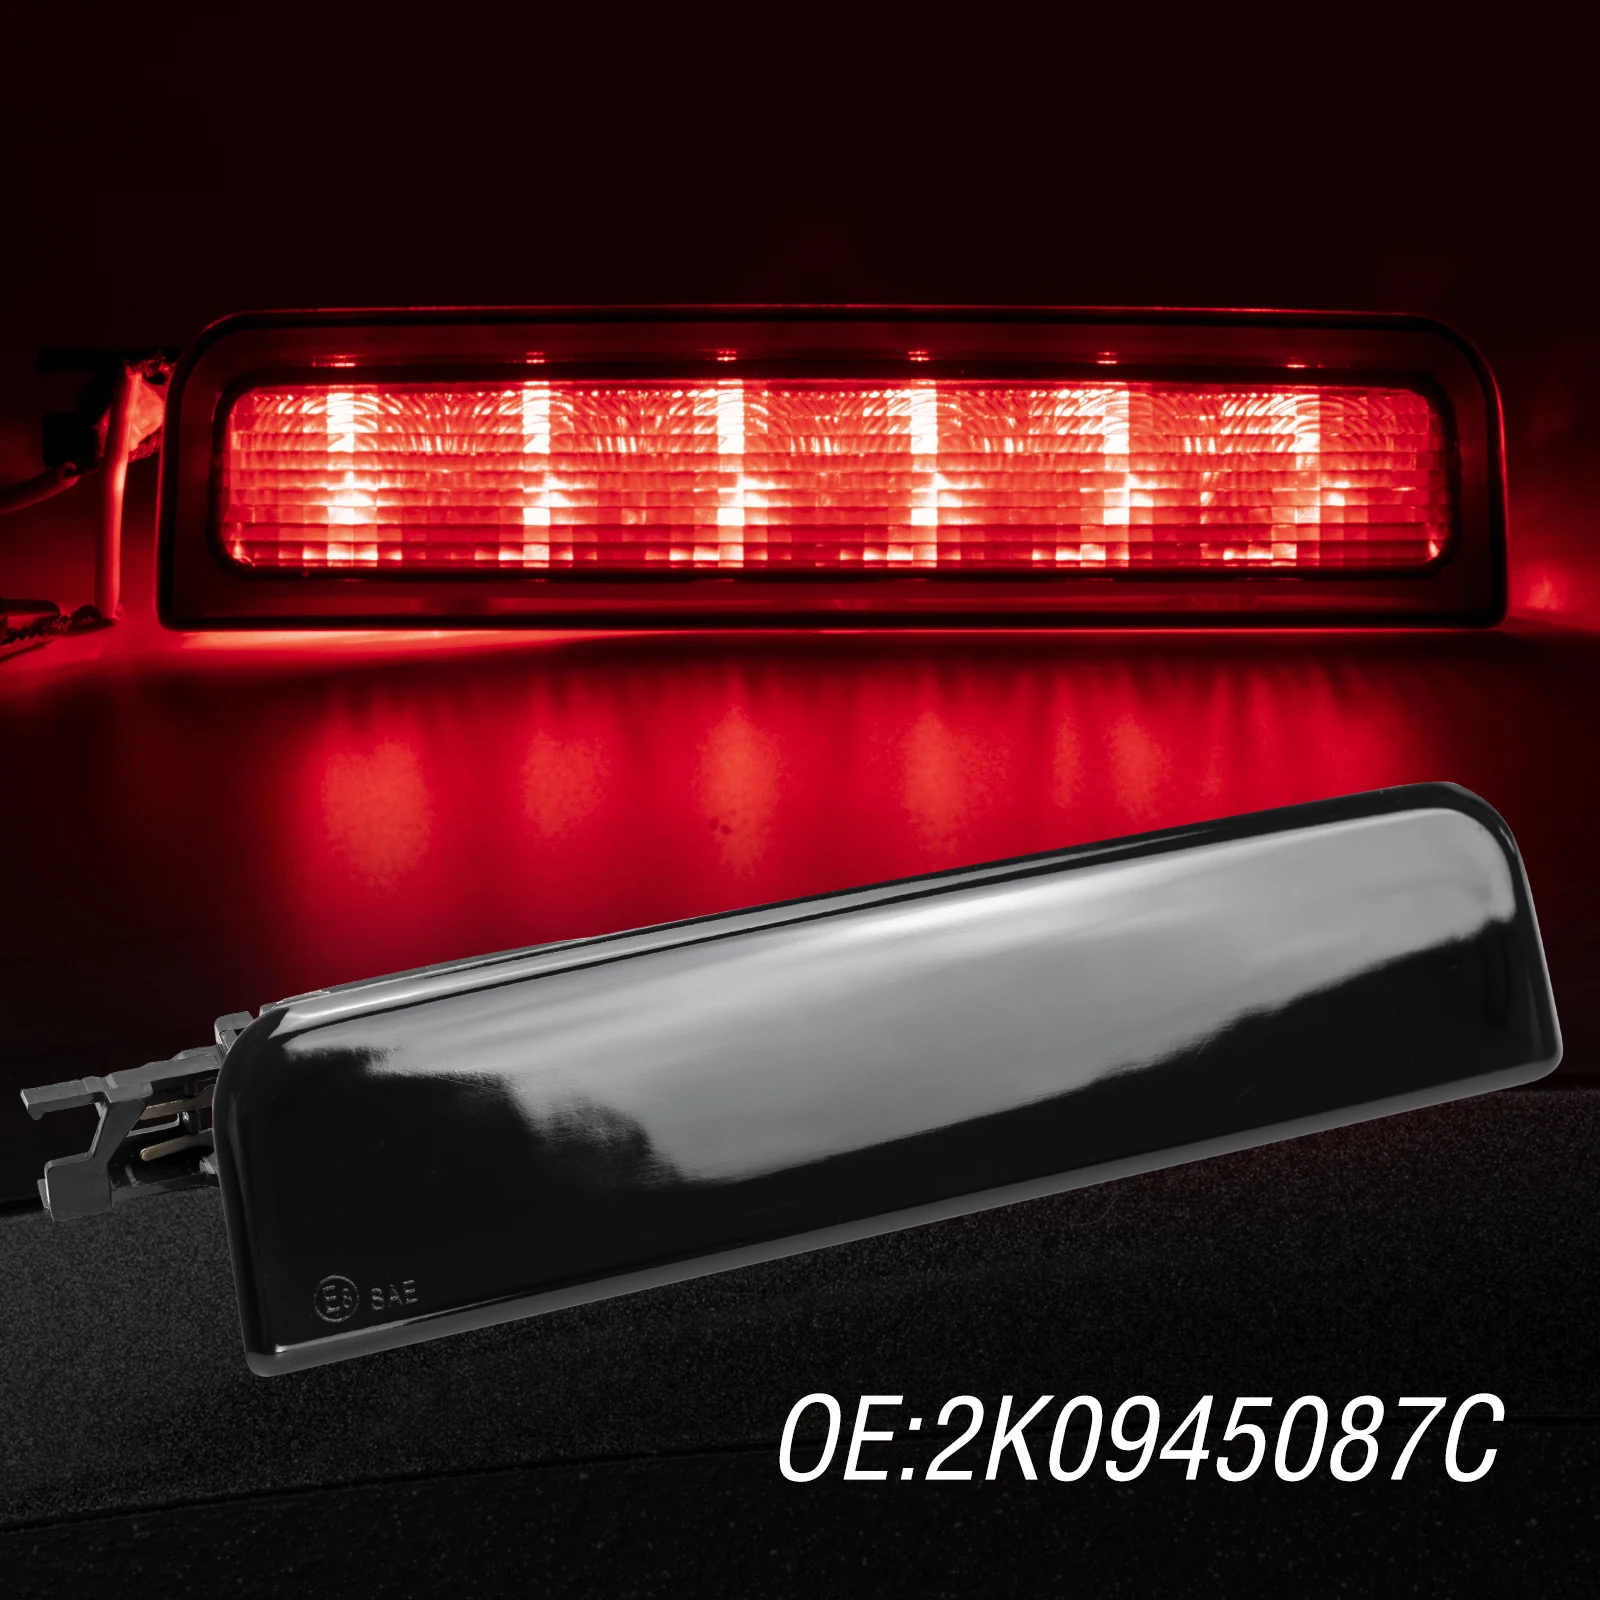 

Тормозной фонарь 3rd Thrid, задний стоп-сигнал, задний стоп-сигнал, лампы, OE эквивалент 2K0945087C для VW Caddy 2004-2015 III Box Estate